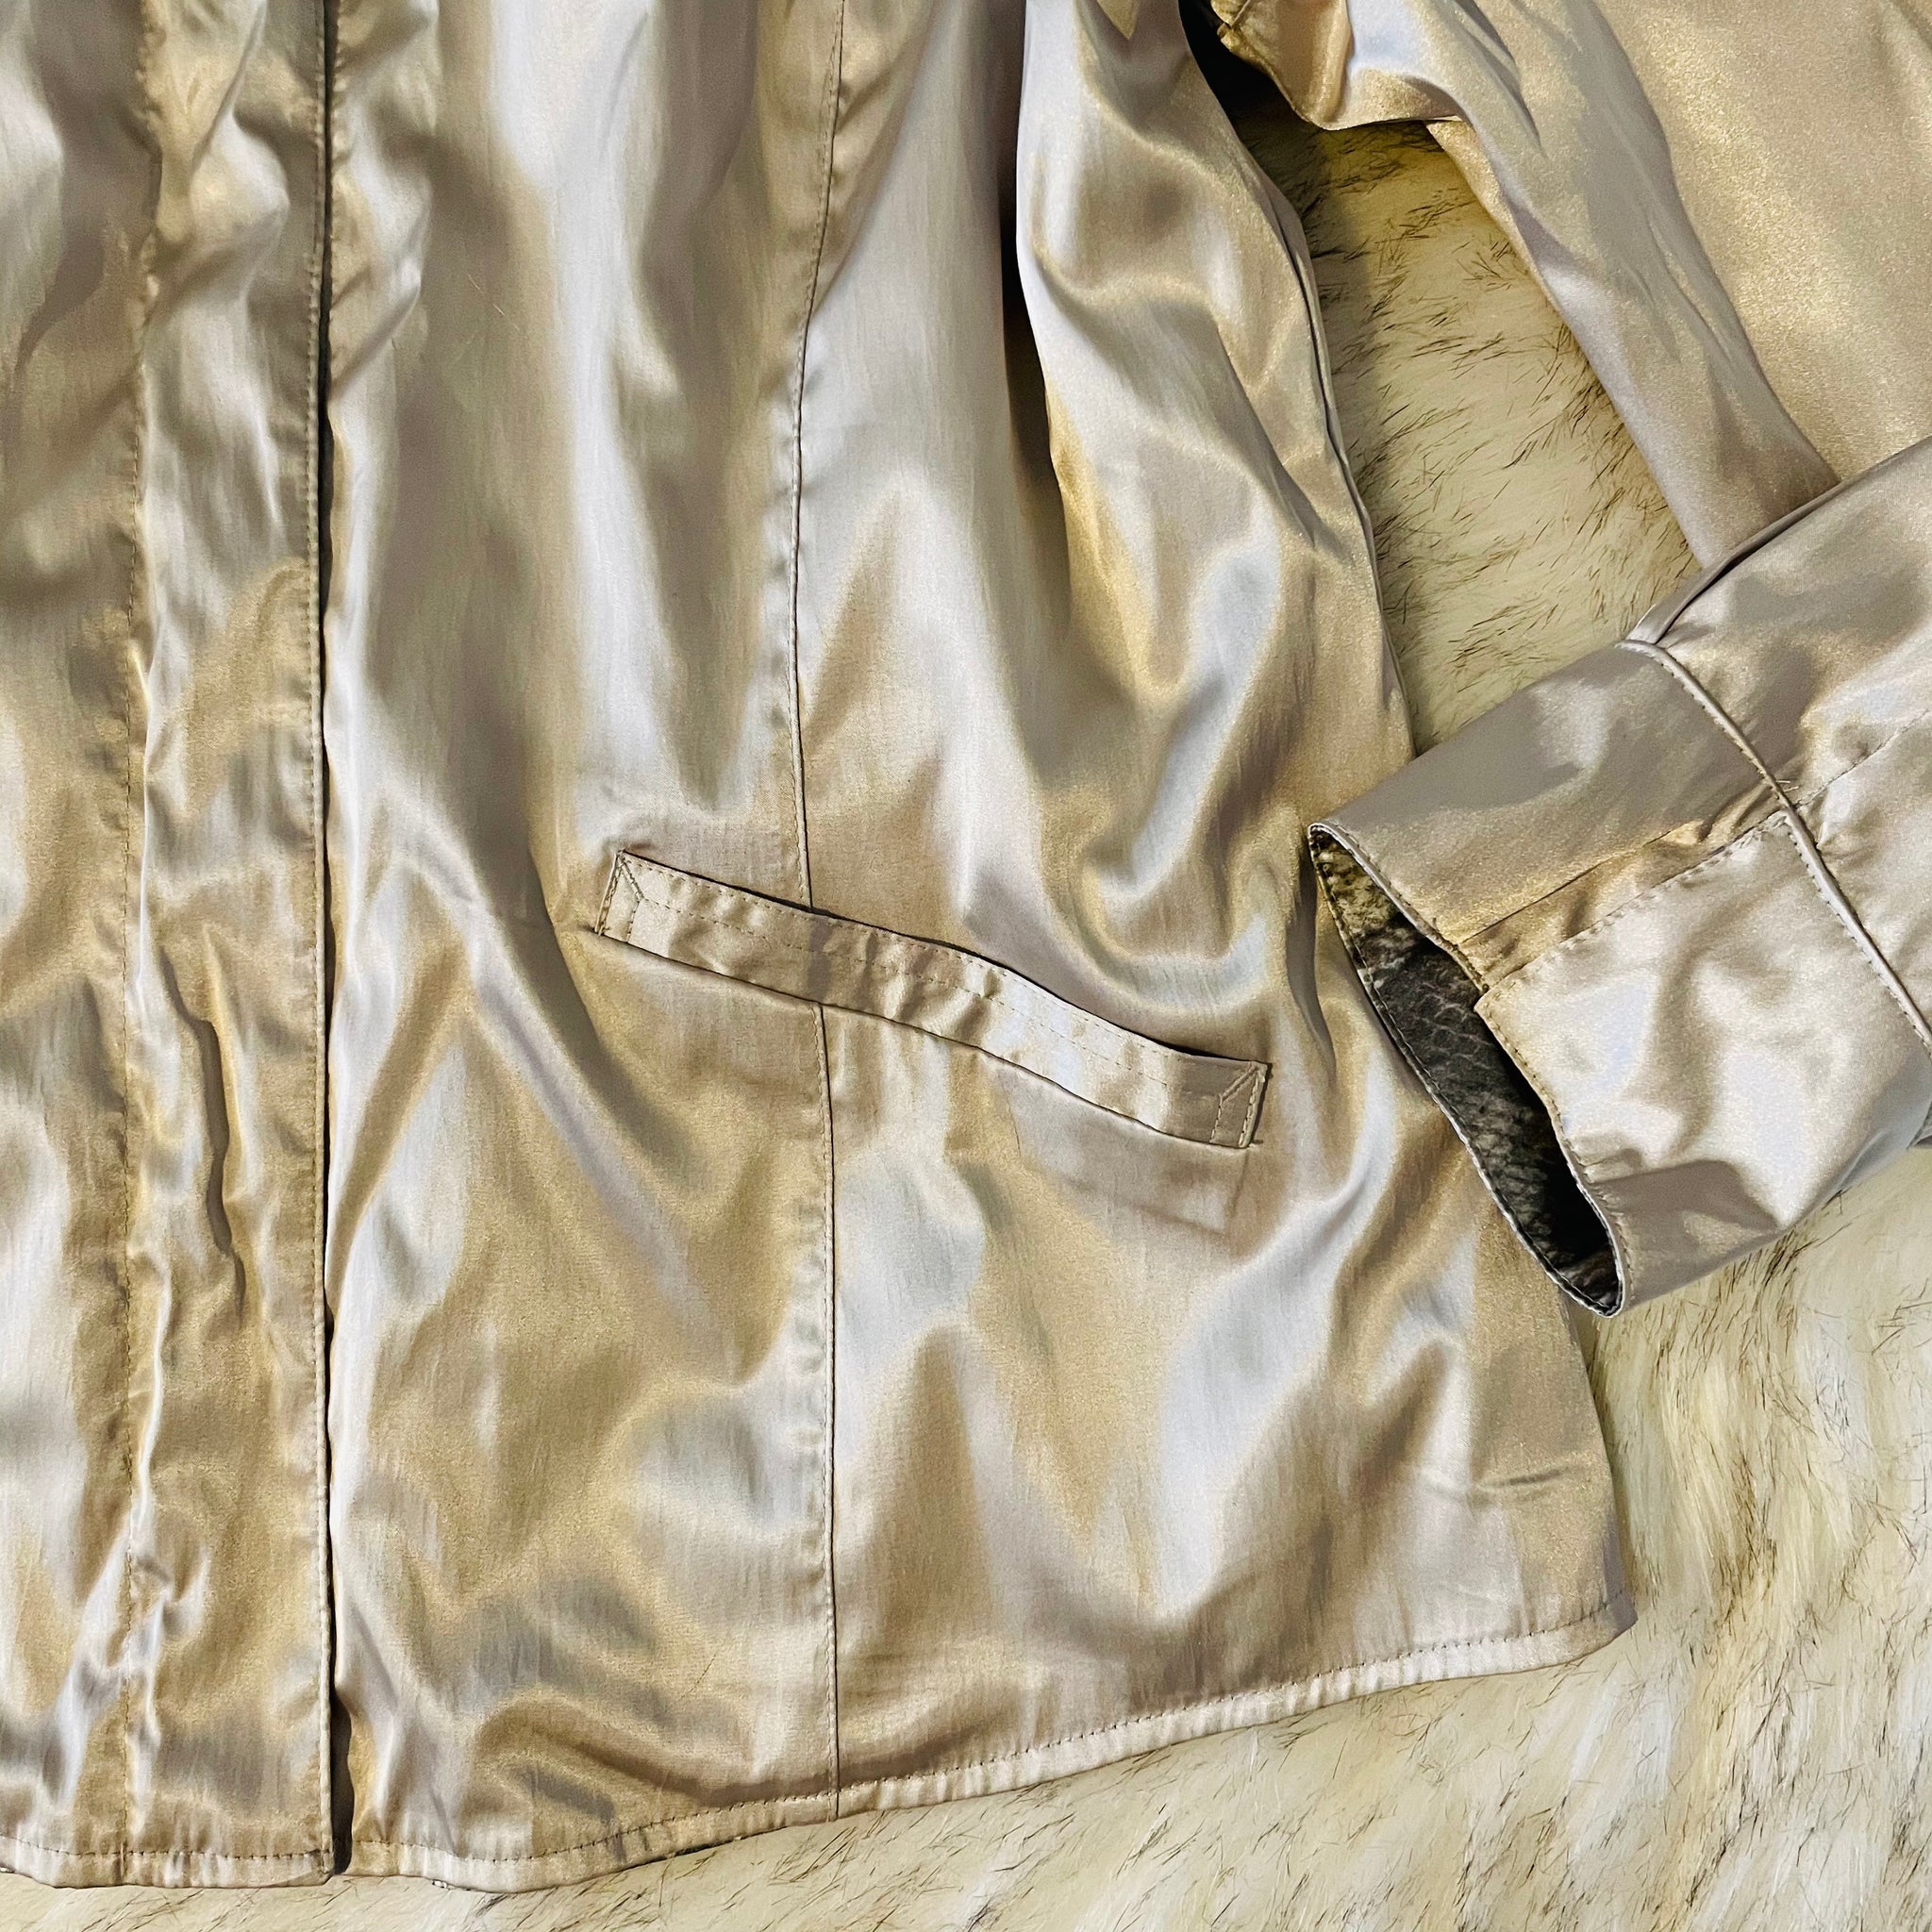 Vintage reversible snakeskin jacket, Size L